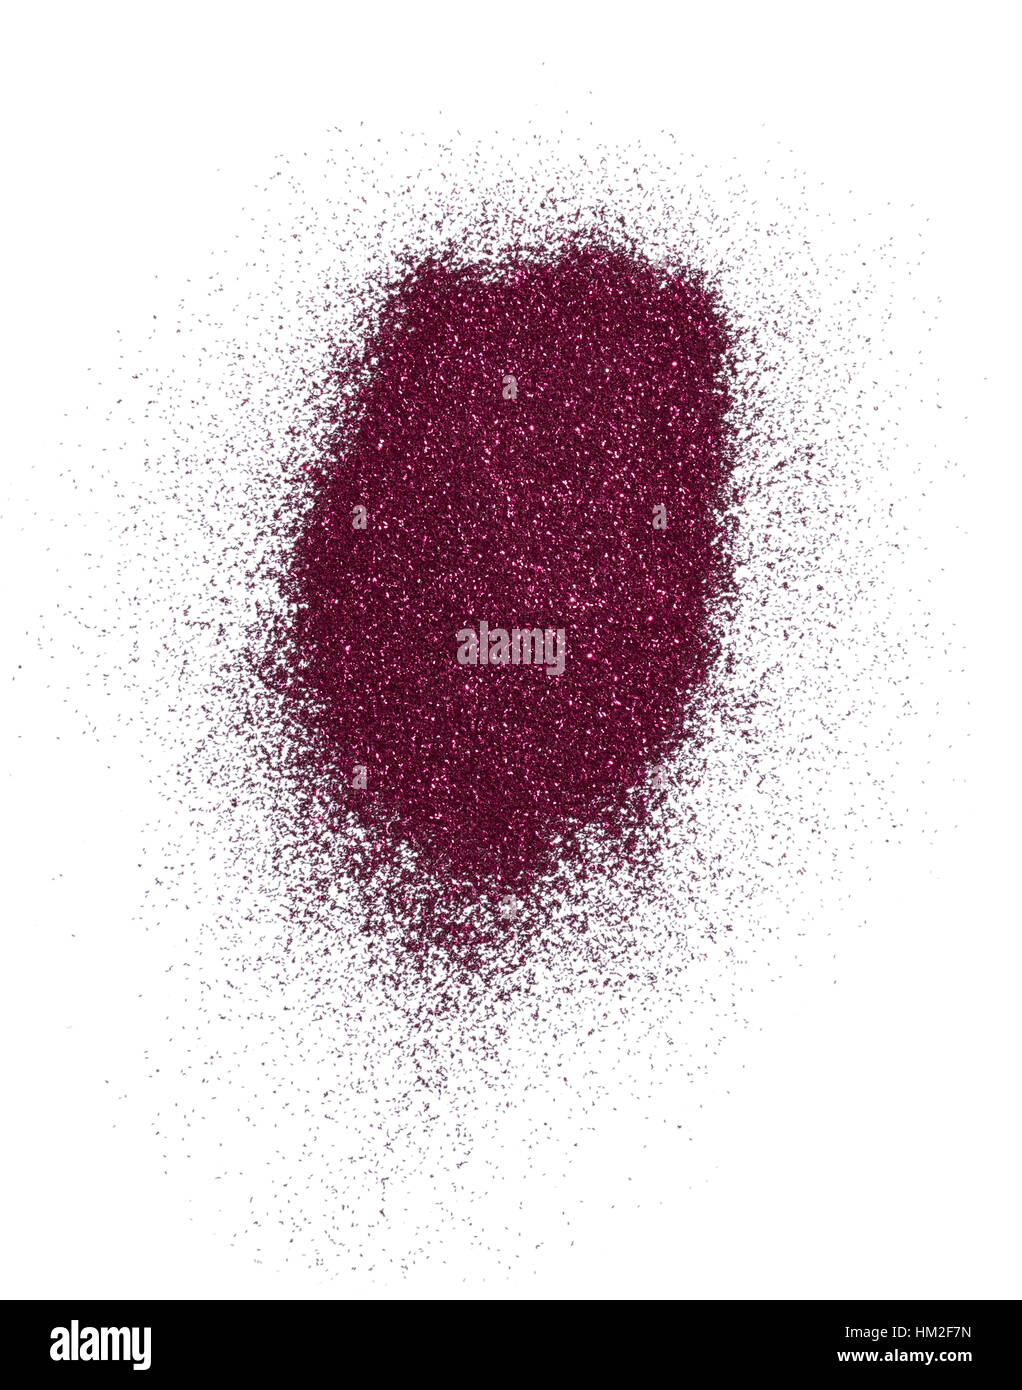 Découper une image de beauté d'un échantillon de poussière glitter rose métallique ou en poudre. Banque D'Images